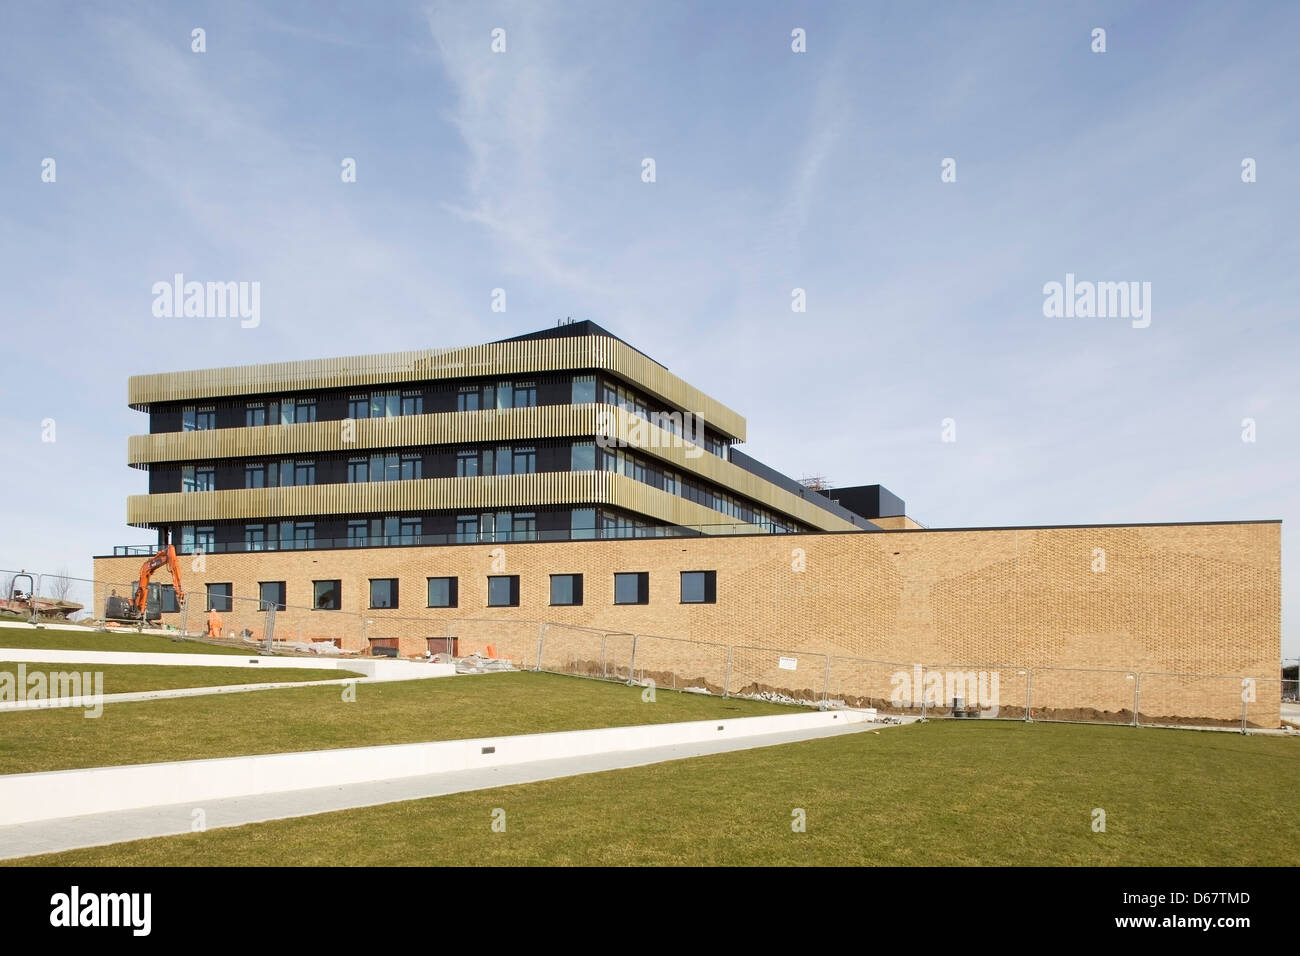 Institut für Werkstoffkunde und Metallurgie Gebäude, Cambridge, Vereinigtes Königreich. Architekt: NBBJ, 2013. Ansicht der Westfassade. Stockfoto